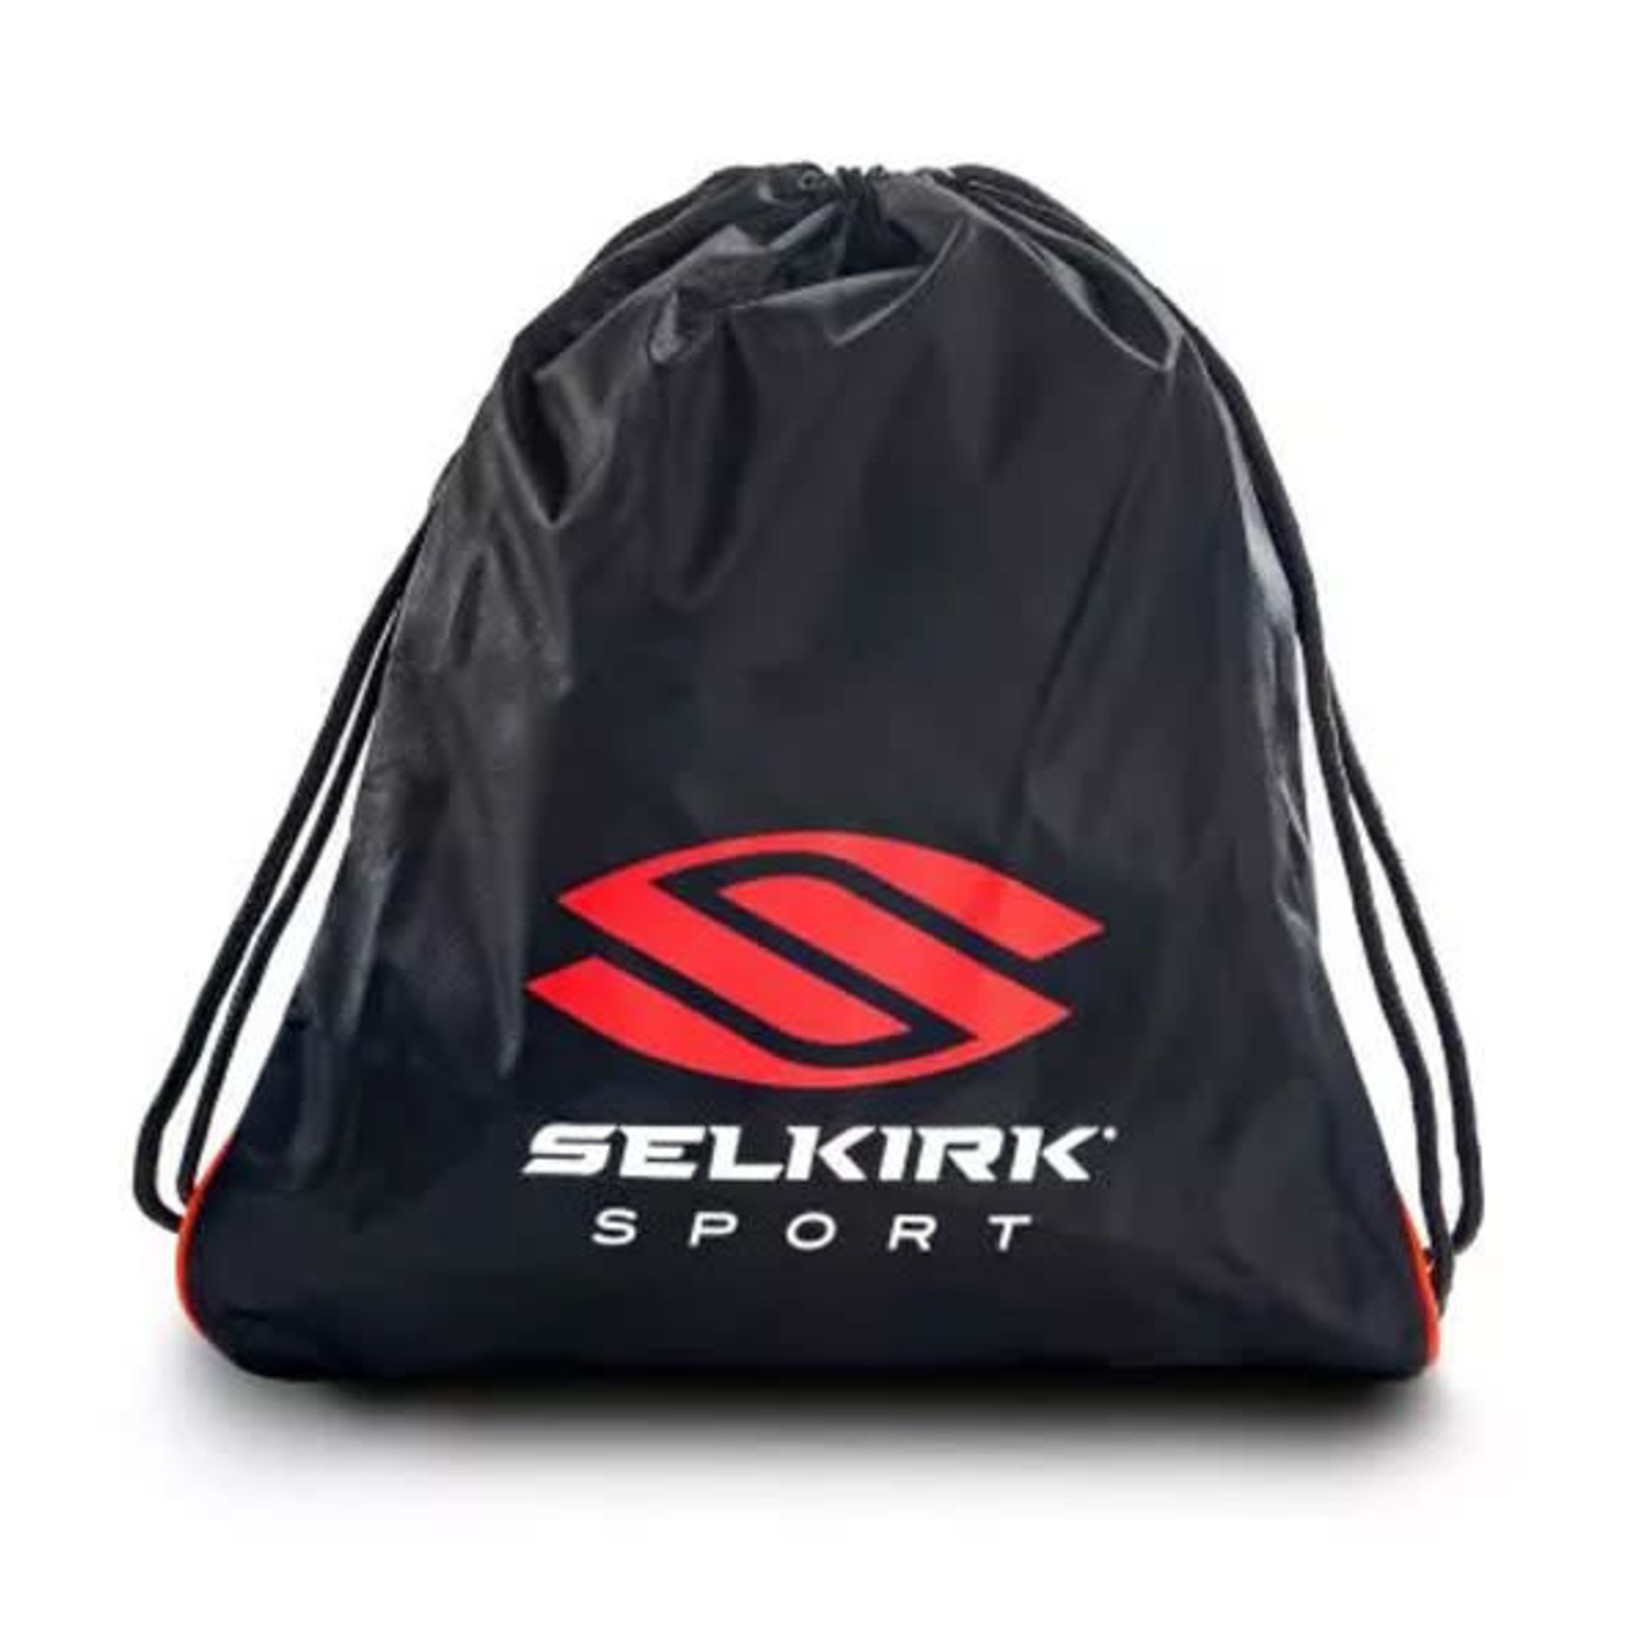 Selkirk SK Drawstring Bag